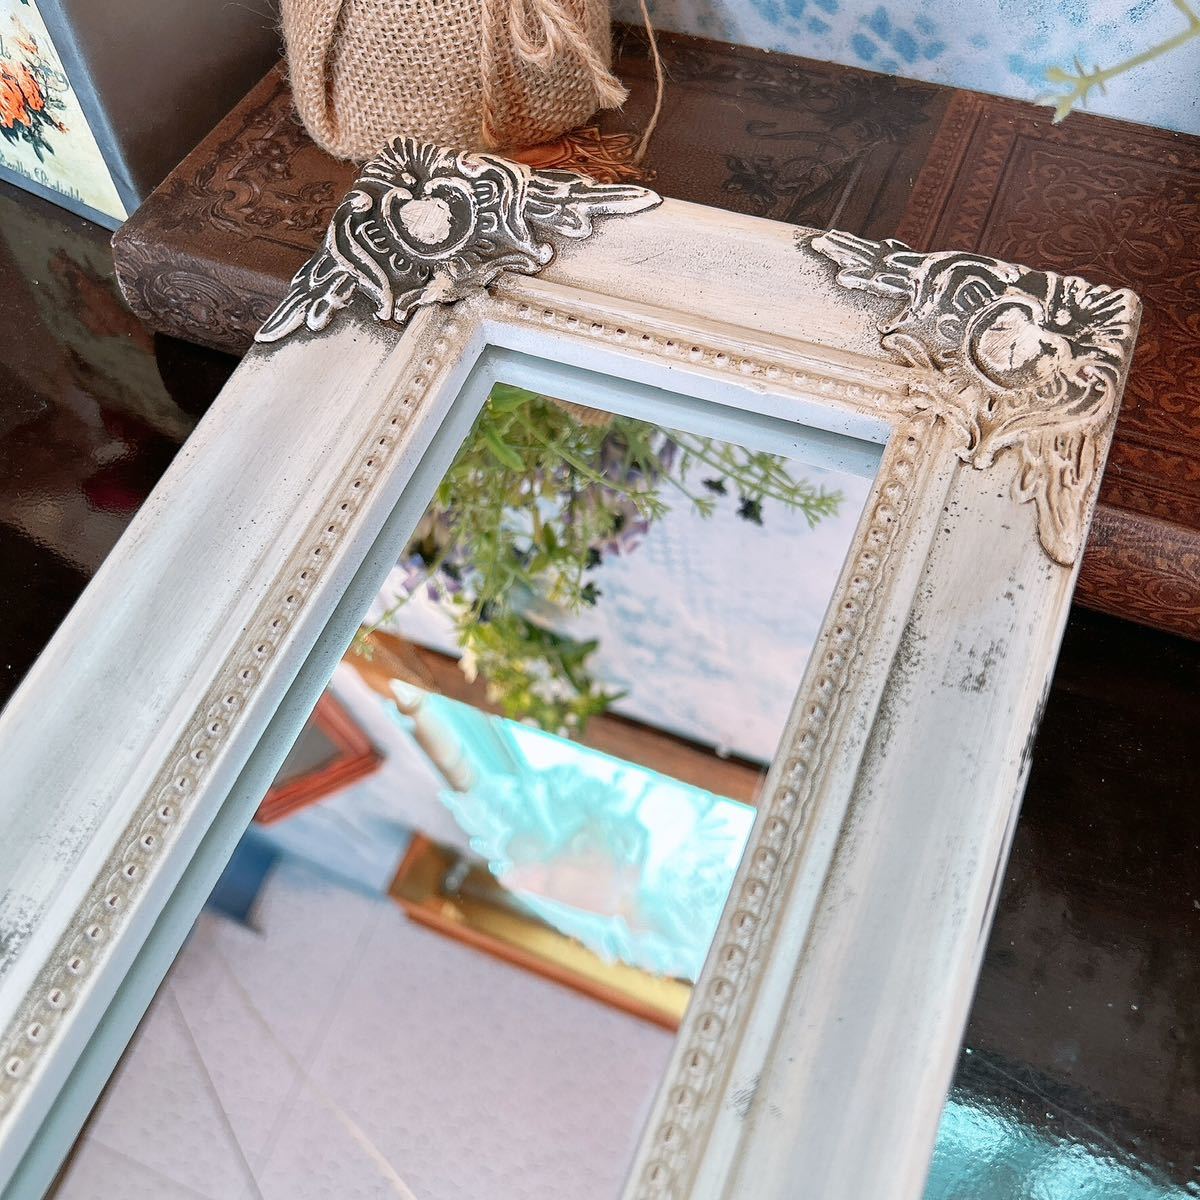 アンティークな部屋 おしゃれな鏡 一面鏡 No.3 ウォールミラー 1枚 壁掛け鏡 White #インテリア装飾品 #ドレッサーミラー #テーブルミラー_画像4